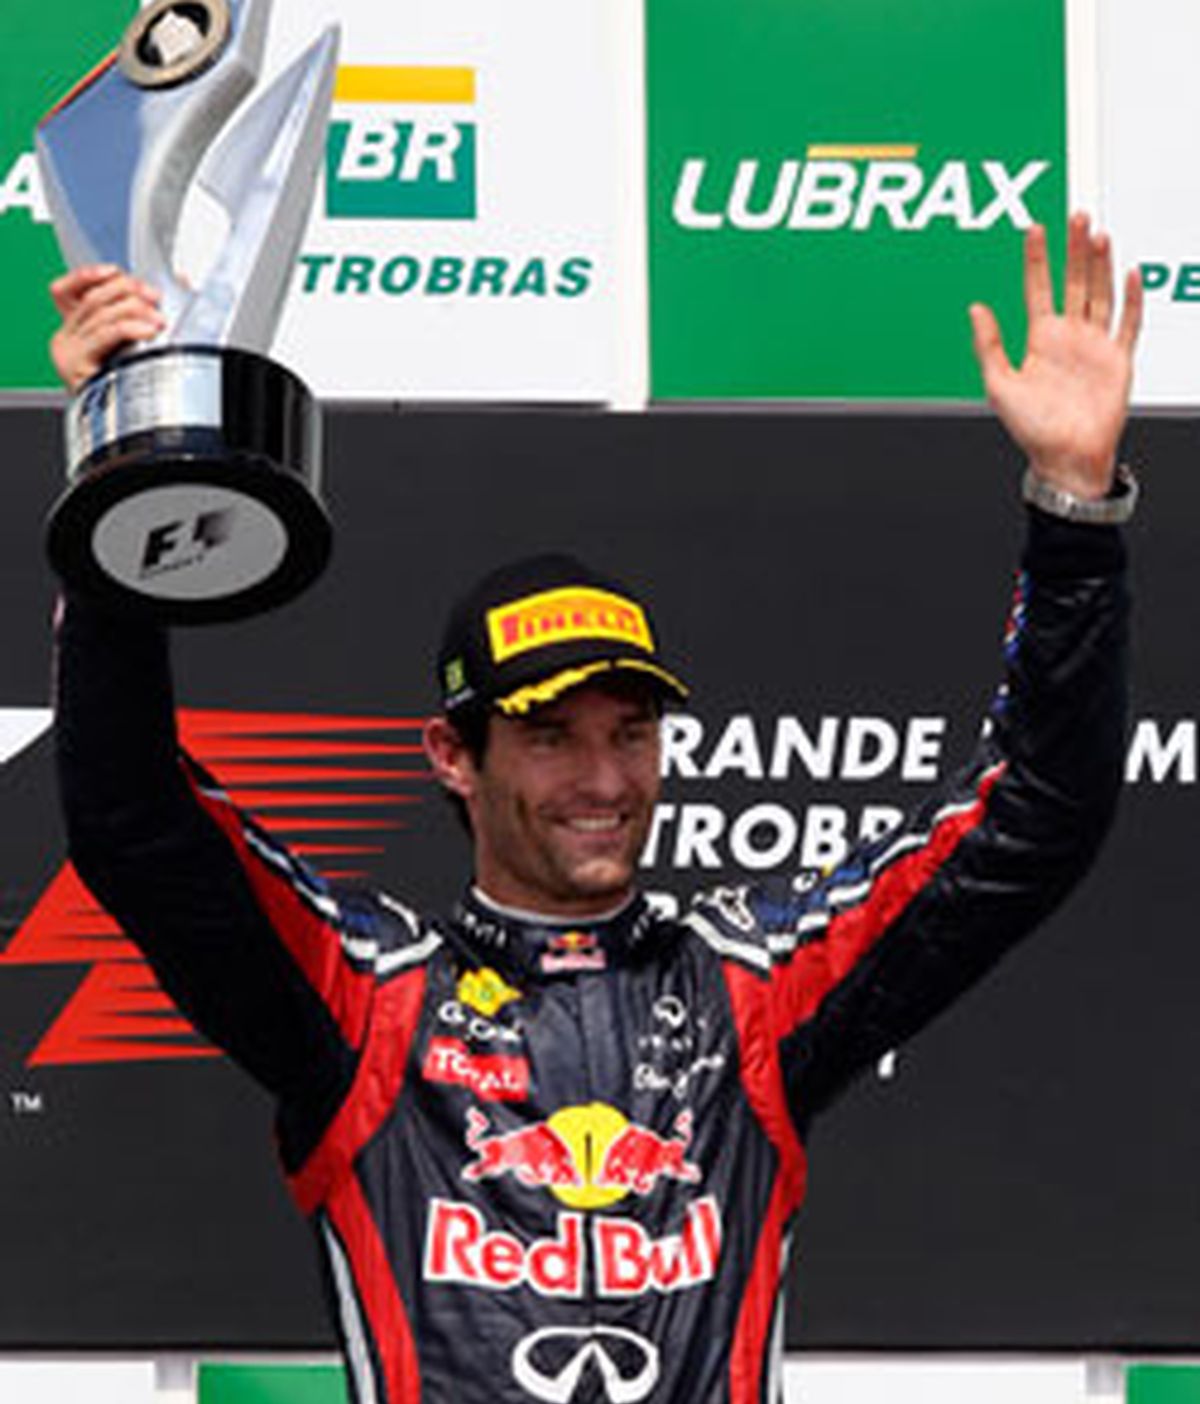 El piloto australiano Mark Webber (Red Bull) se mostró muy contento y satisfecho de haber conseguido "una victoria muy importante para el equipo". FOTO: Reuters